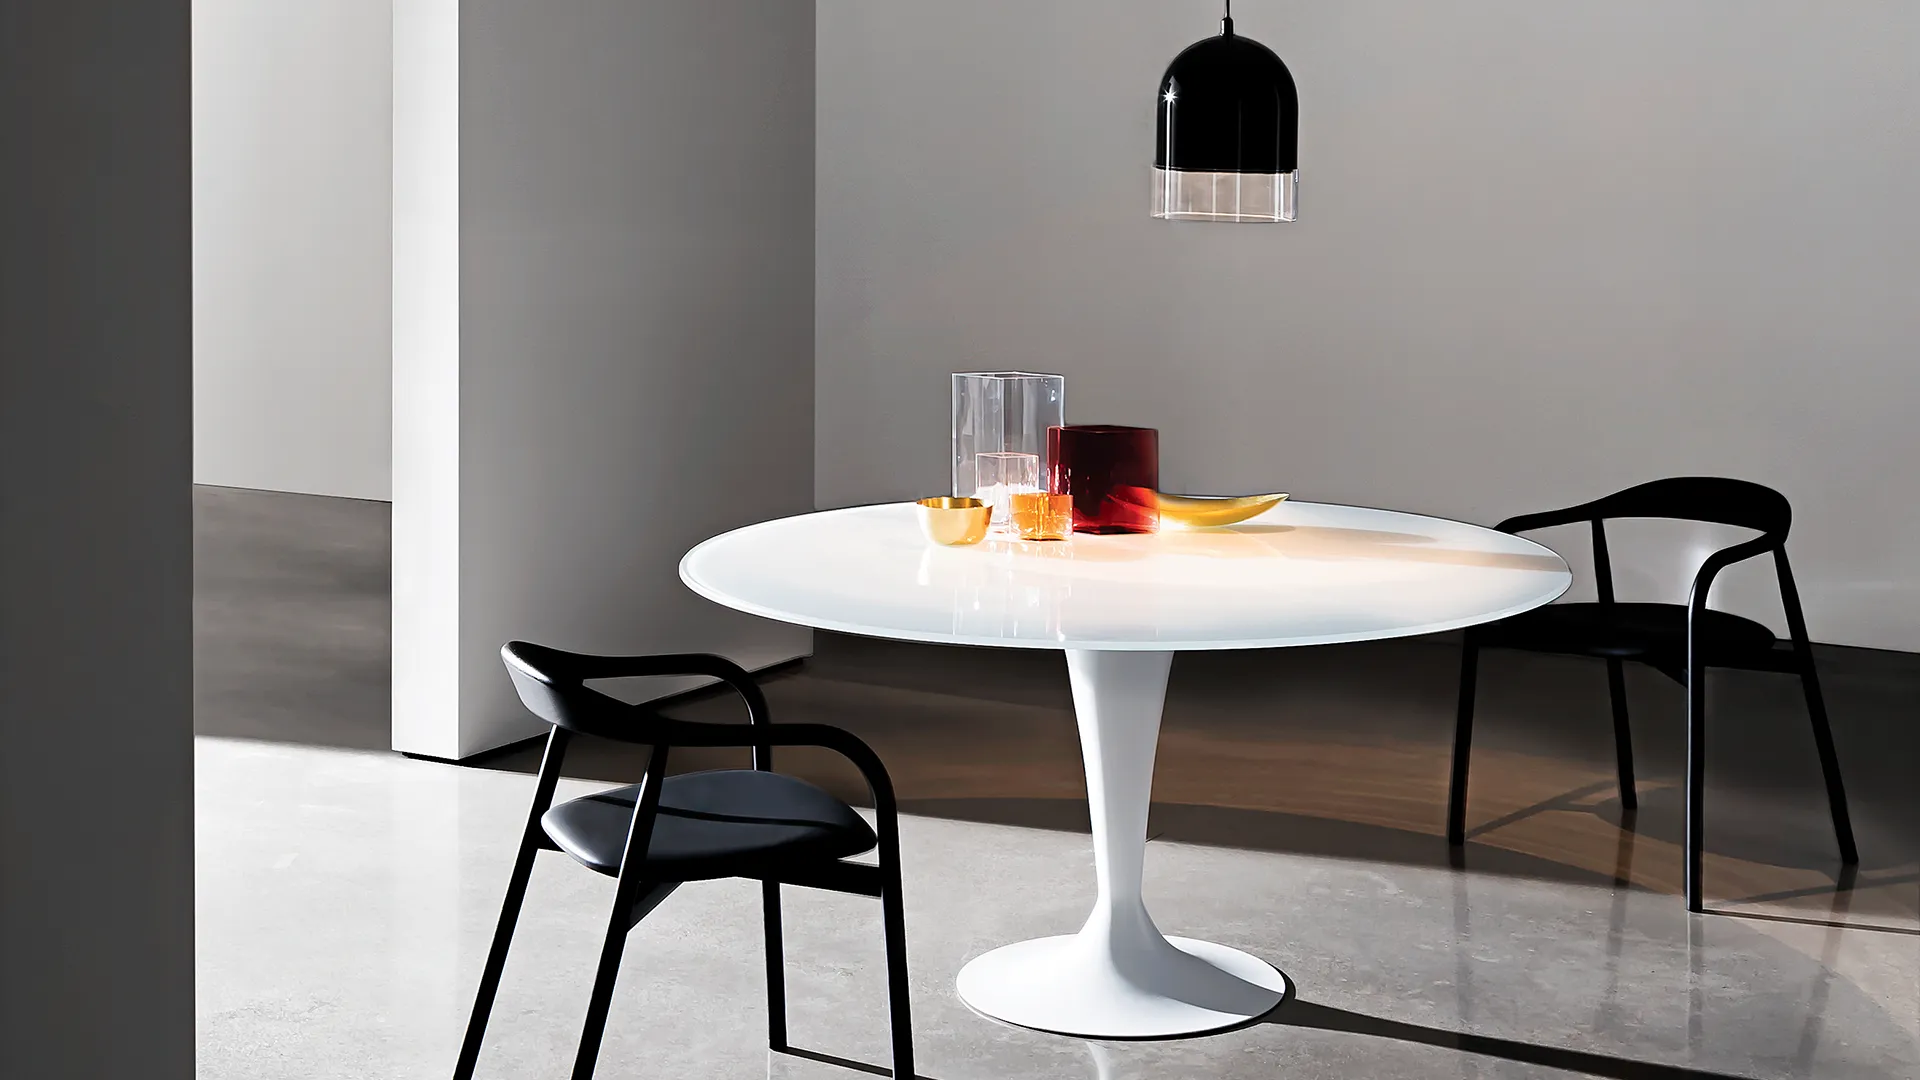 Tavolo rotondo con base in alluminio colore cromo lucido e piano in ceramica colore grigio